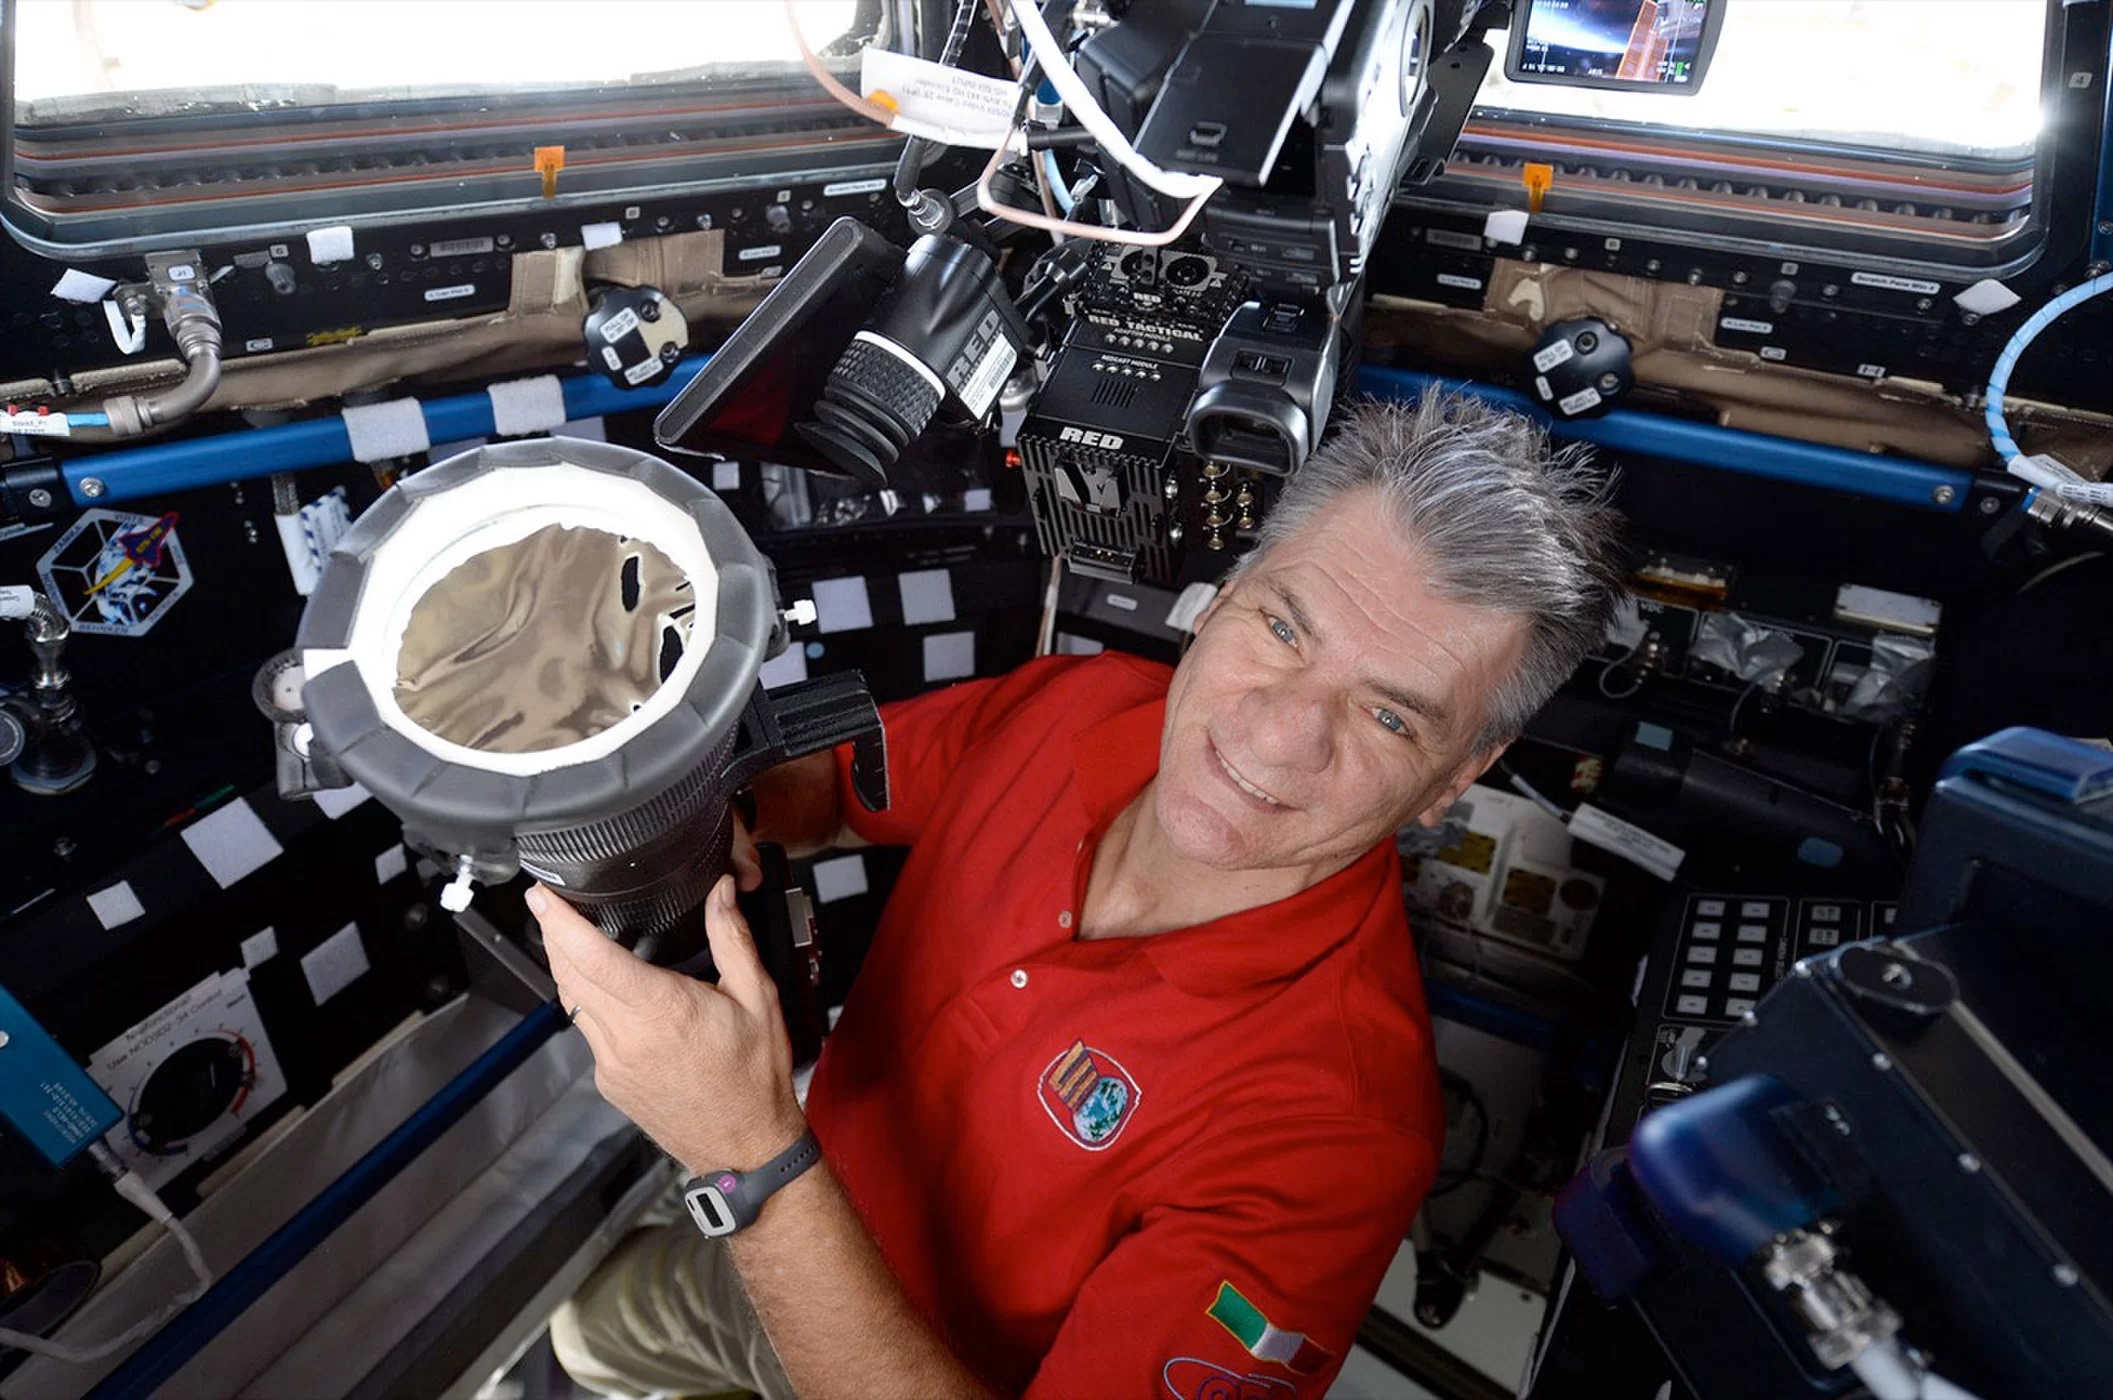 Paolo Nespoli przygotowuje swój aparat, wyposażony w soczewki 400mm i filtr przeciwsłoneczny, do zrobienia zdjęć z modułu Cupola na pokładzie ISS.